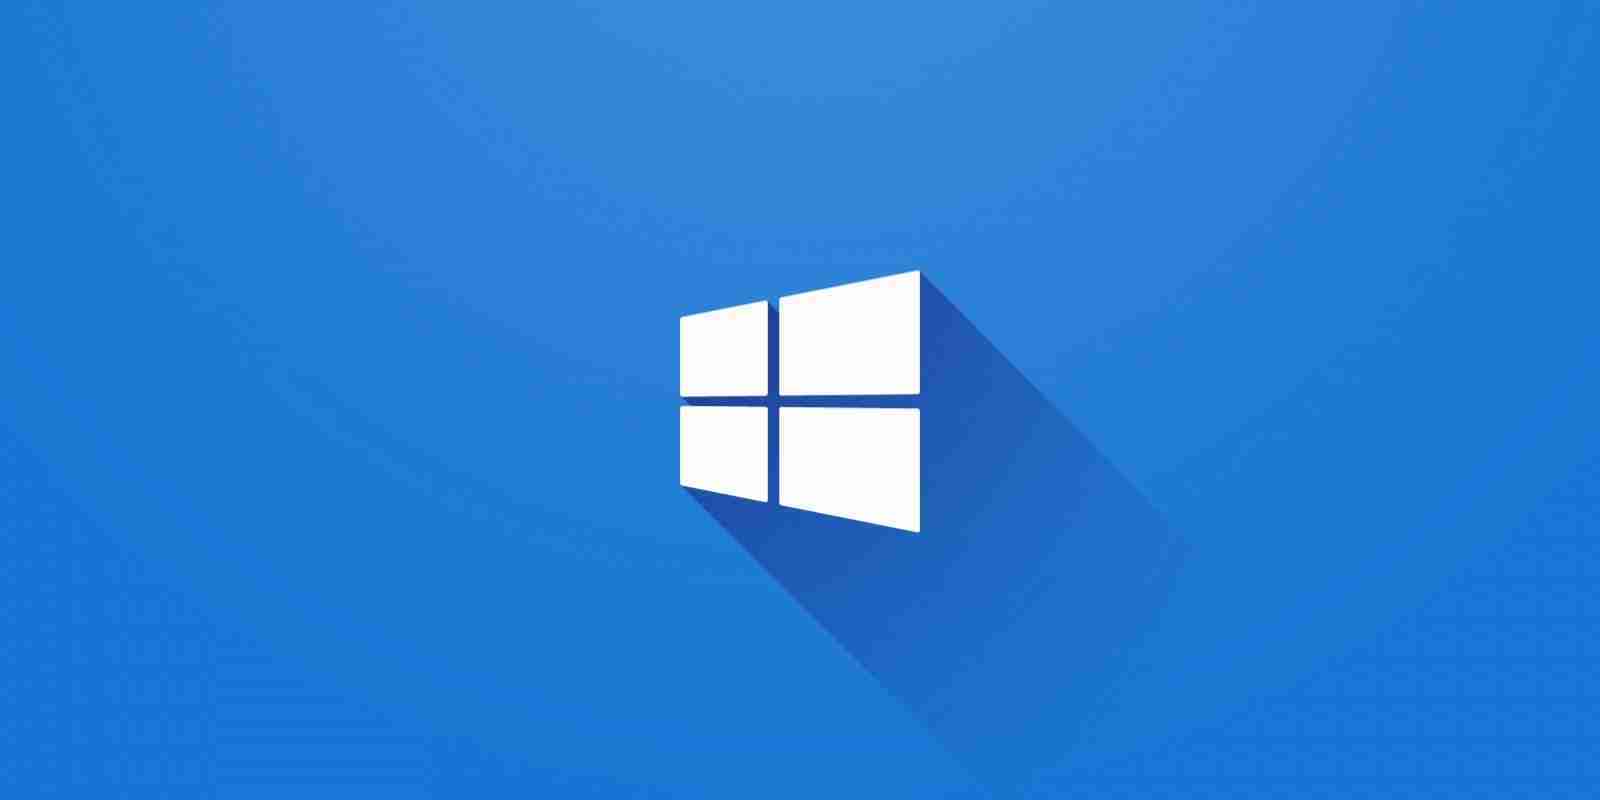 Microsoft đã giới hạn sẵn có Windows 10 mới nhất 20H2 cho người dùng để đảm bảo trải nghiệm tốt nhất về chất lượng và bảo mật. Hãy truy cập ngay để cập nhật tất cả các tính năng mới nhất và cải thiện hiệu suất của hệ điều hành một cách tối đa.